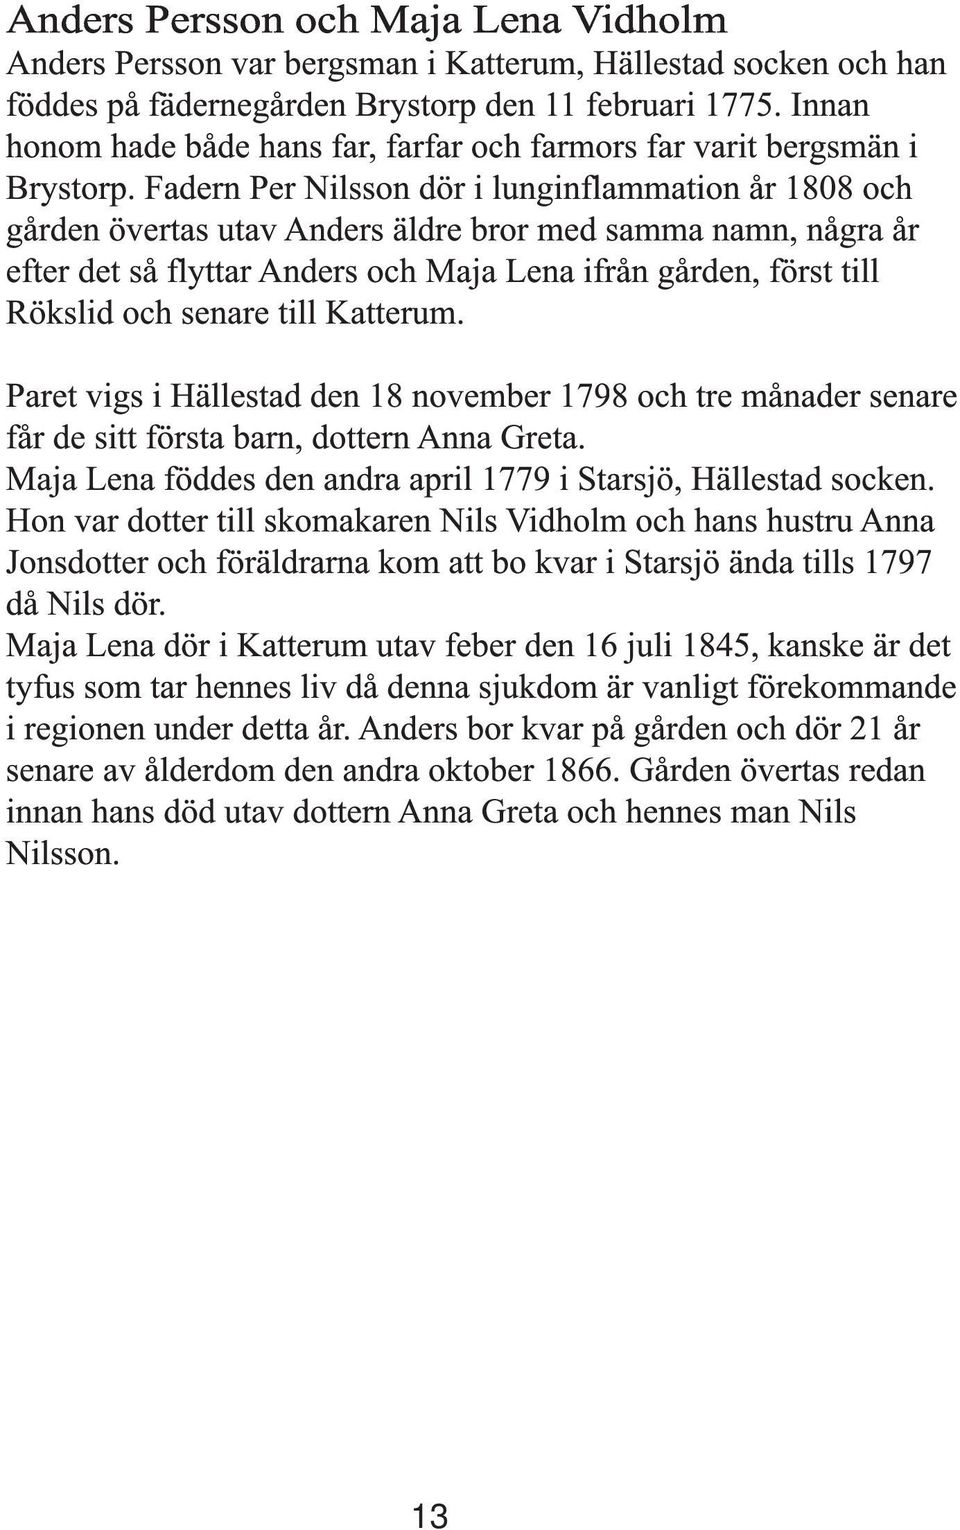 Fadern Per Nilsson dör i lunginflammation år 1808 och gården övertas utav Anders äldre bror med samma namn, några år efter det så flyttar Anders och Maja Lena ifrån gården, först till Rökslid och